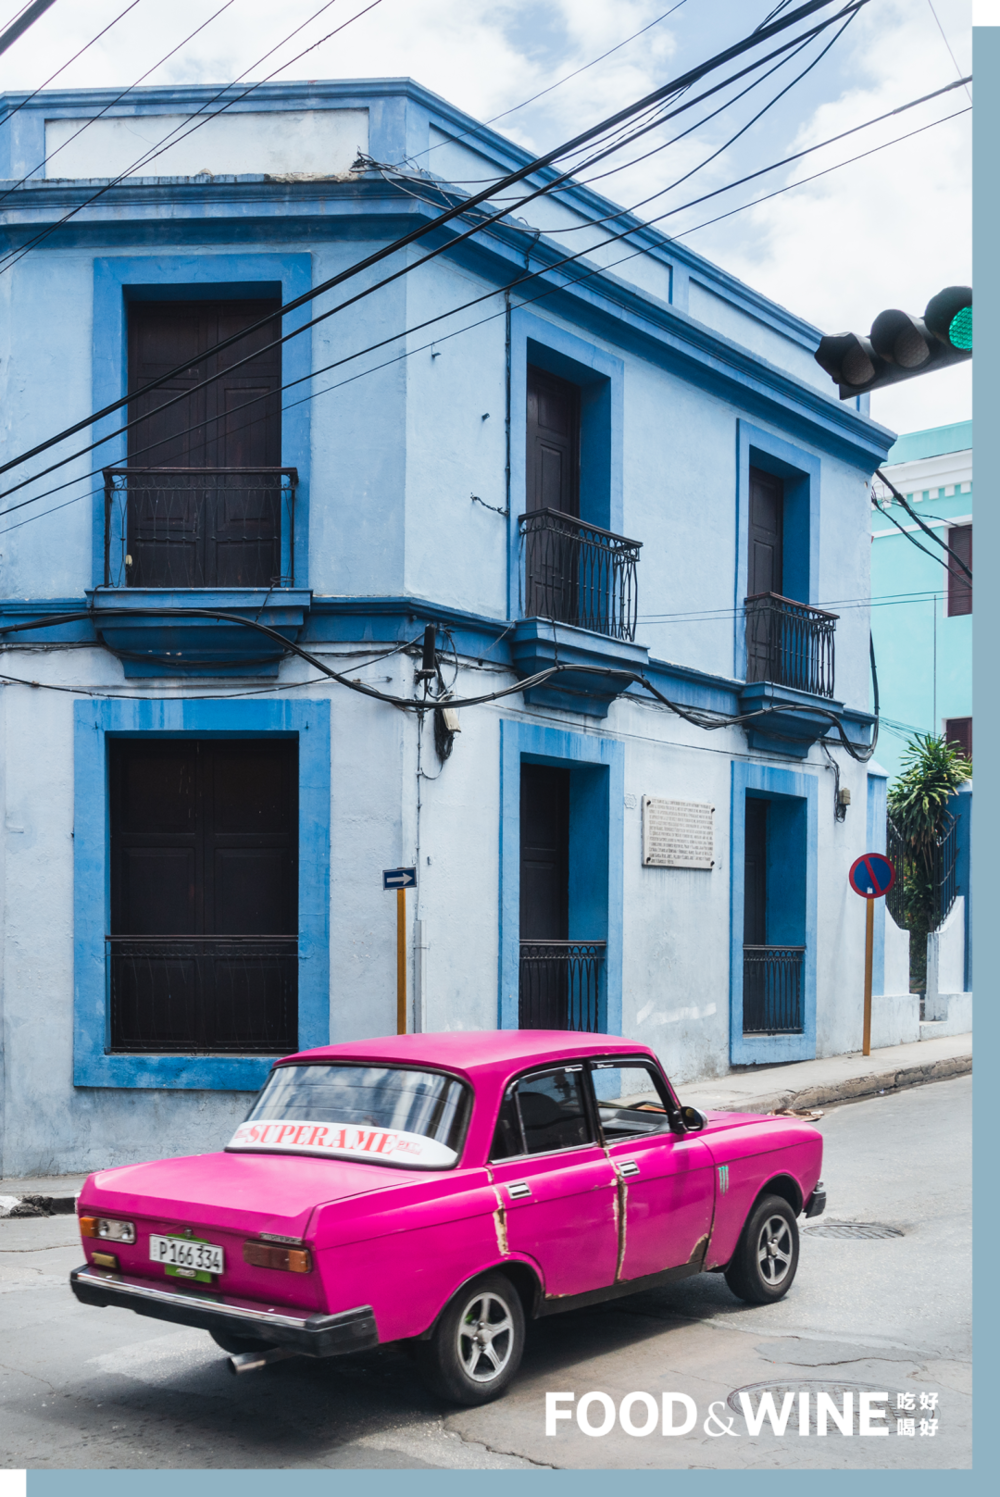 颜色艳丽、年几失修的殖民地建筑和不知传了几代人的古董汽车。